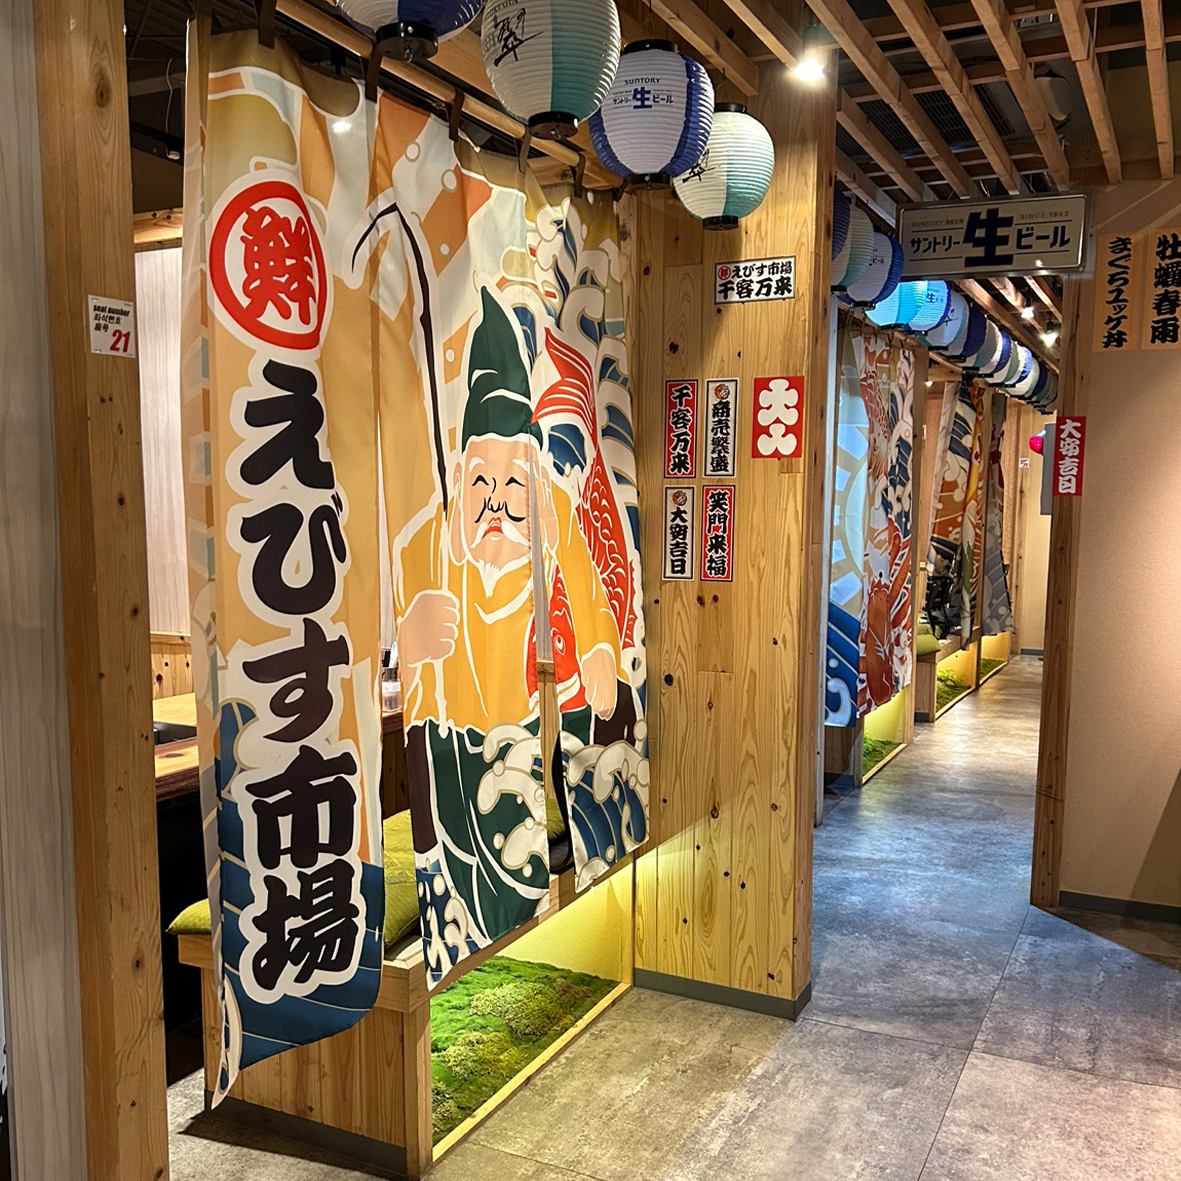 惠比壽市集是午餐的好去處！ 新鮮的海鮮和生啤酒真是絕佳！